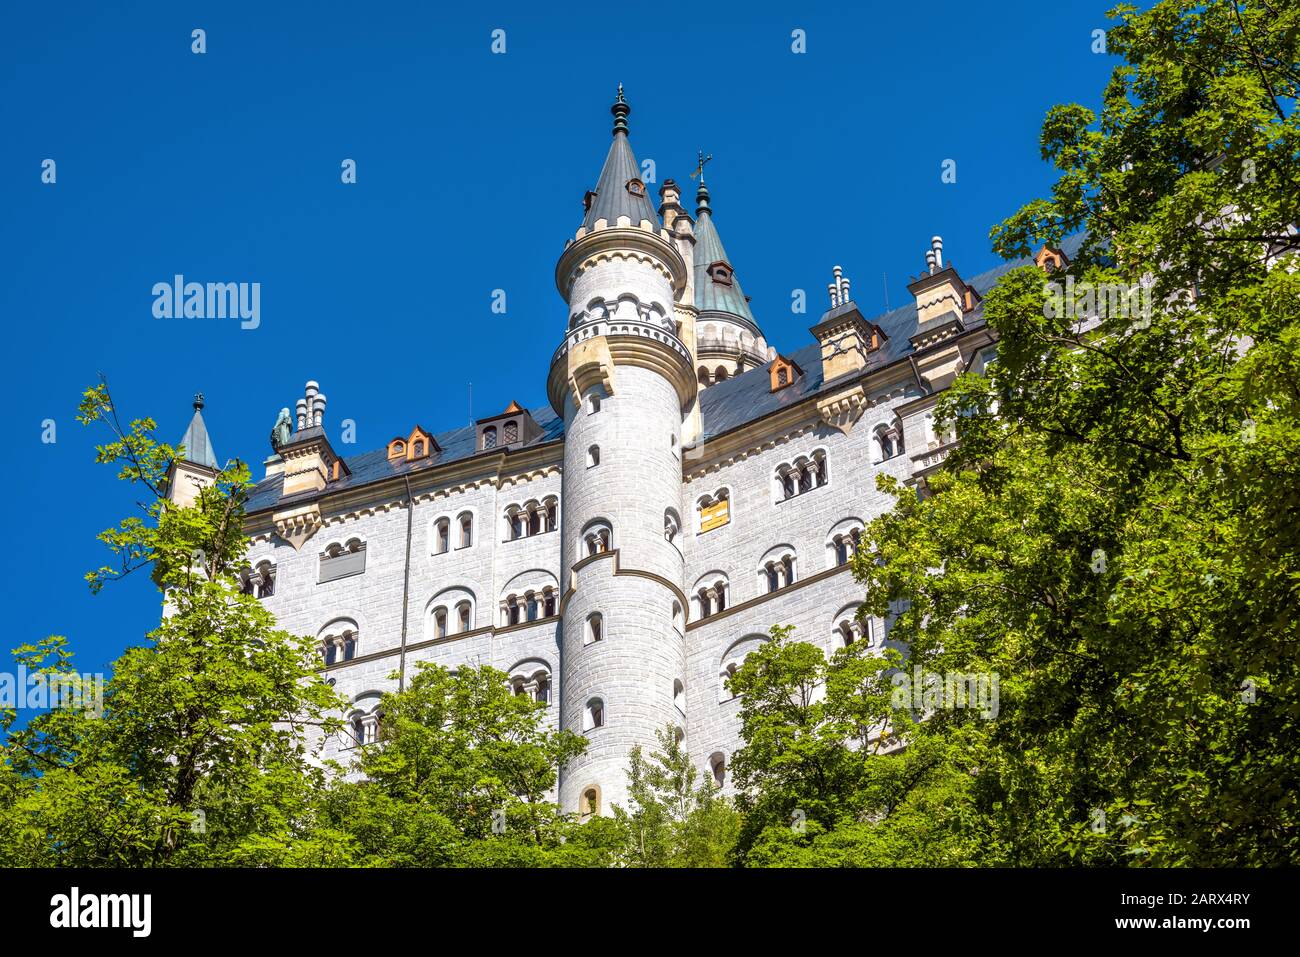 Castello Di Neuschwanstein Nei Pressi Di Fussen, Baviera, Germania. E' un famoso punto di riferimento delle Alpi tedesche. Bellissimo castello fiabesco vicino. Vista panoramica di Neusc Foto Stock